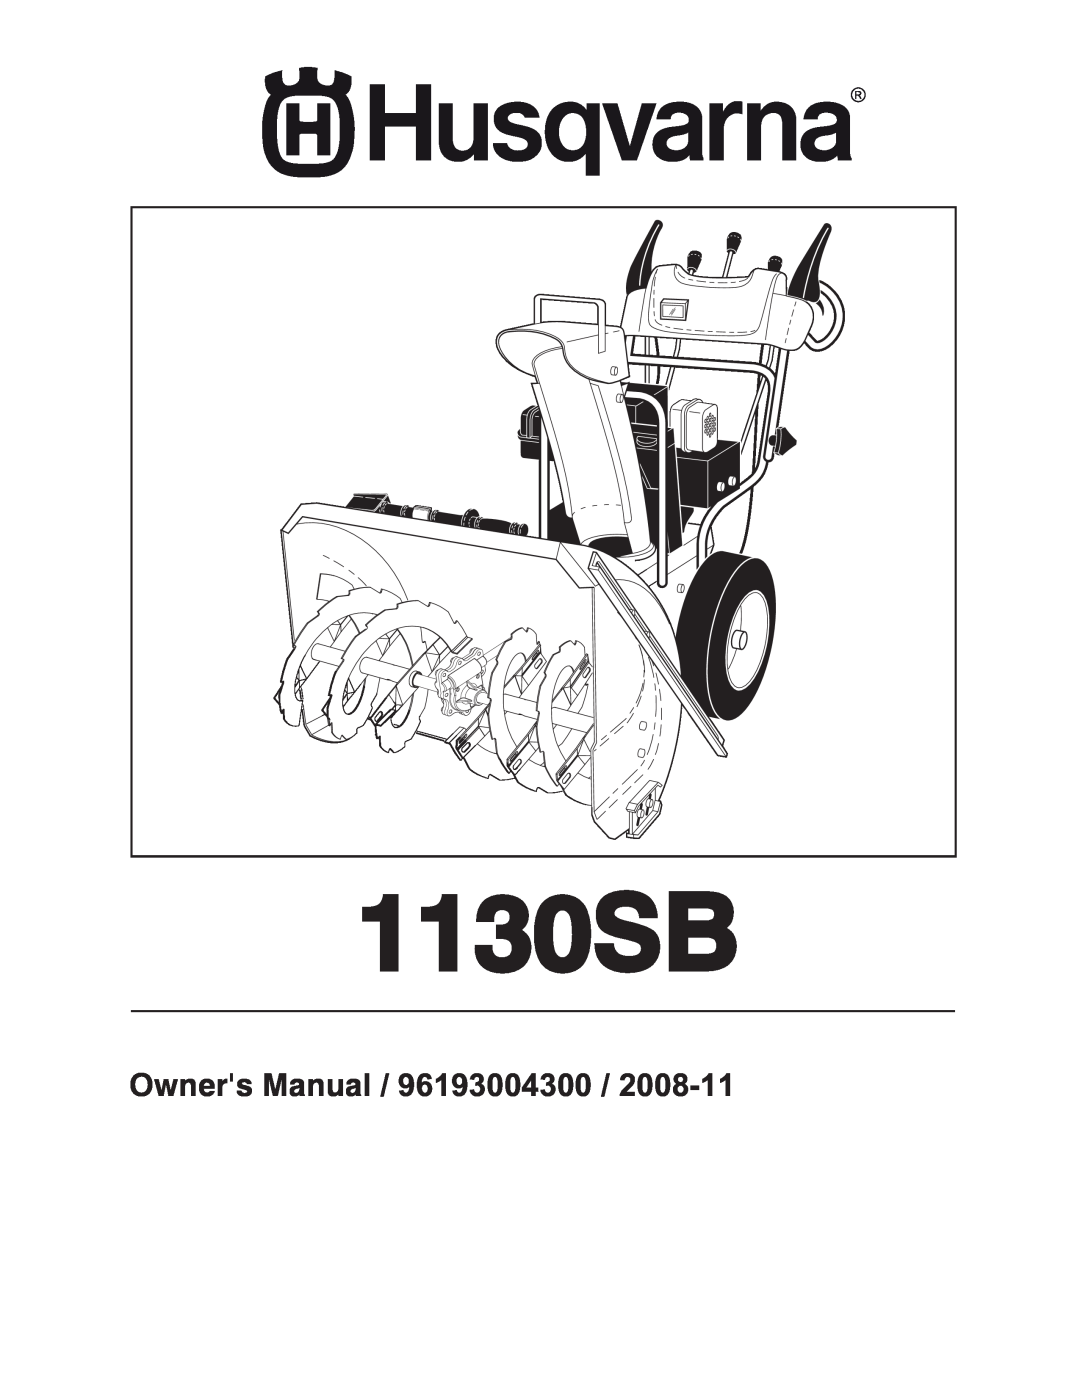 Husqvarna 1130SB owner manual 